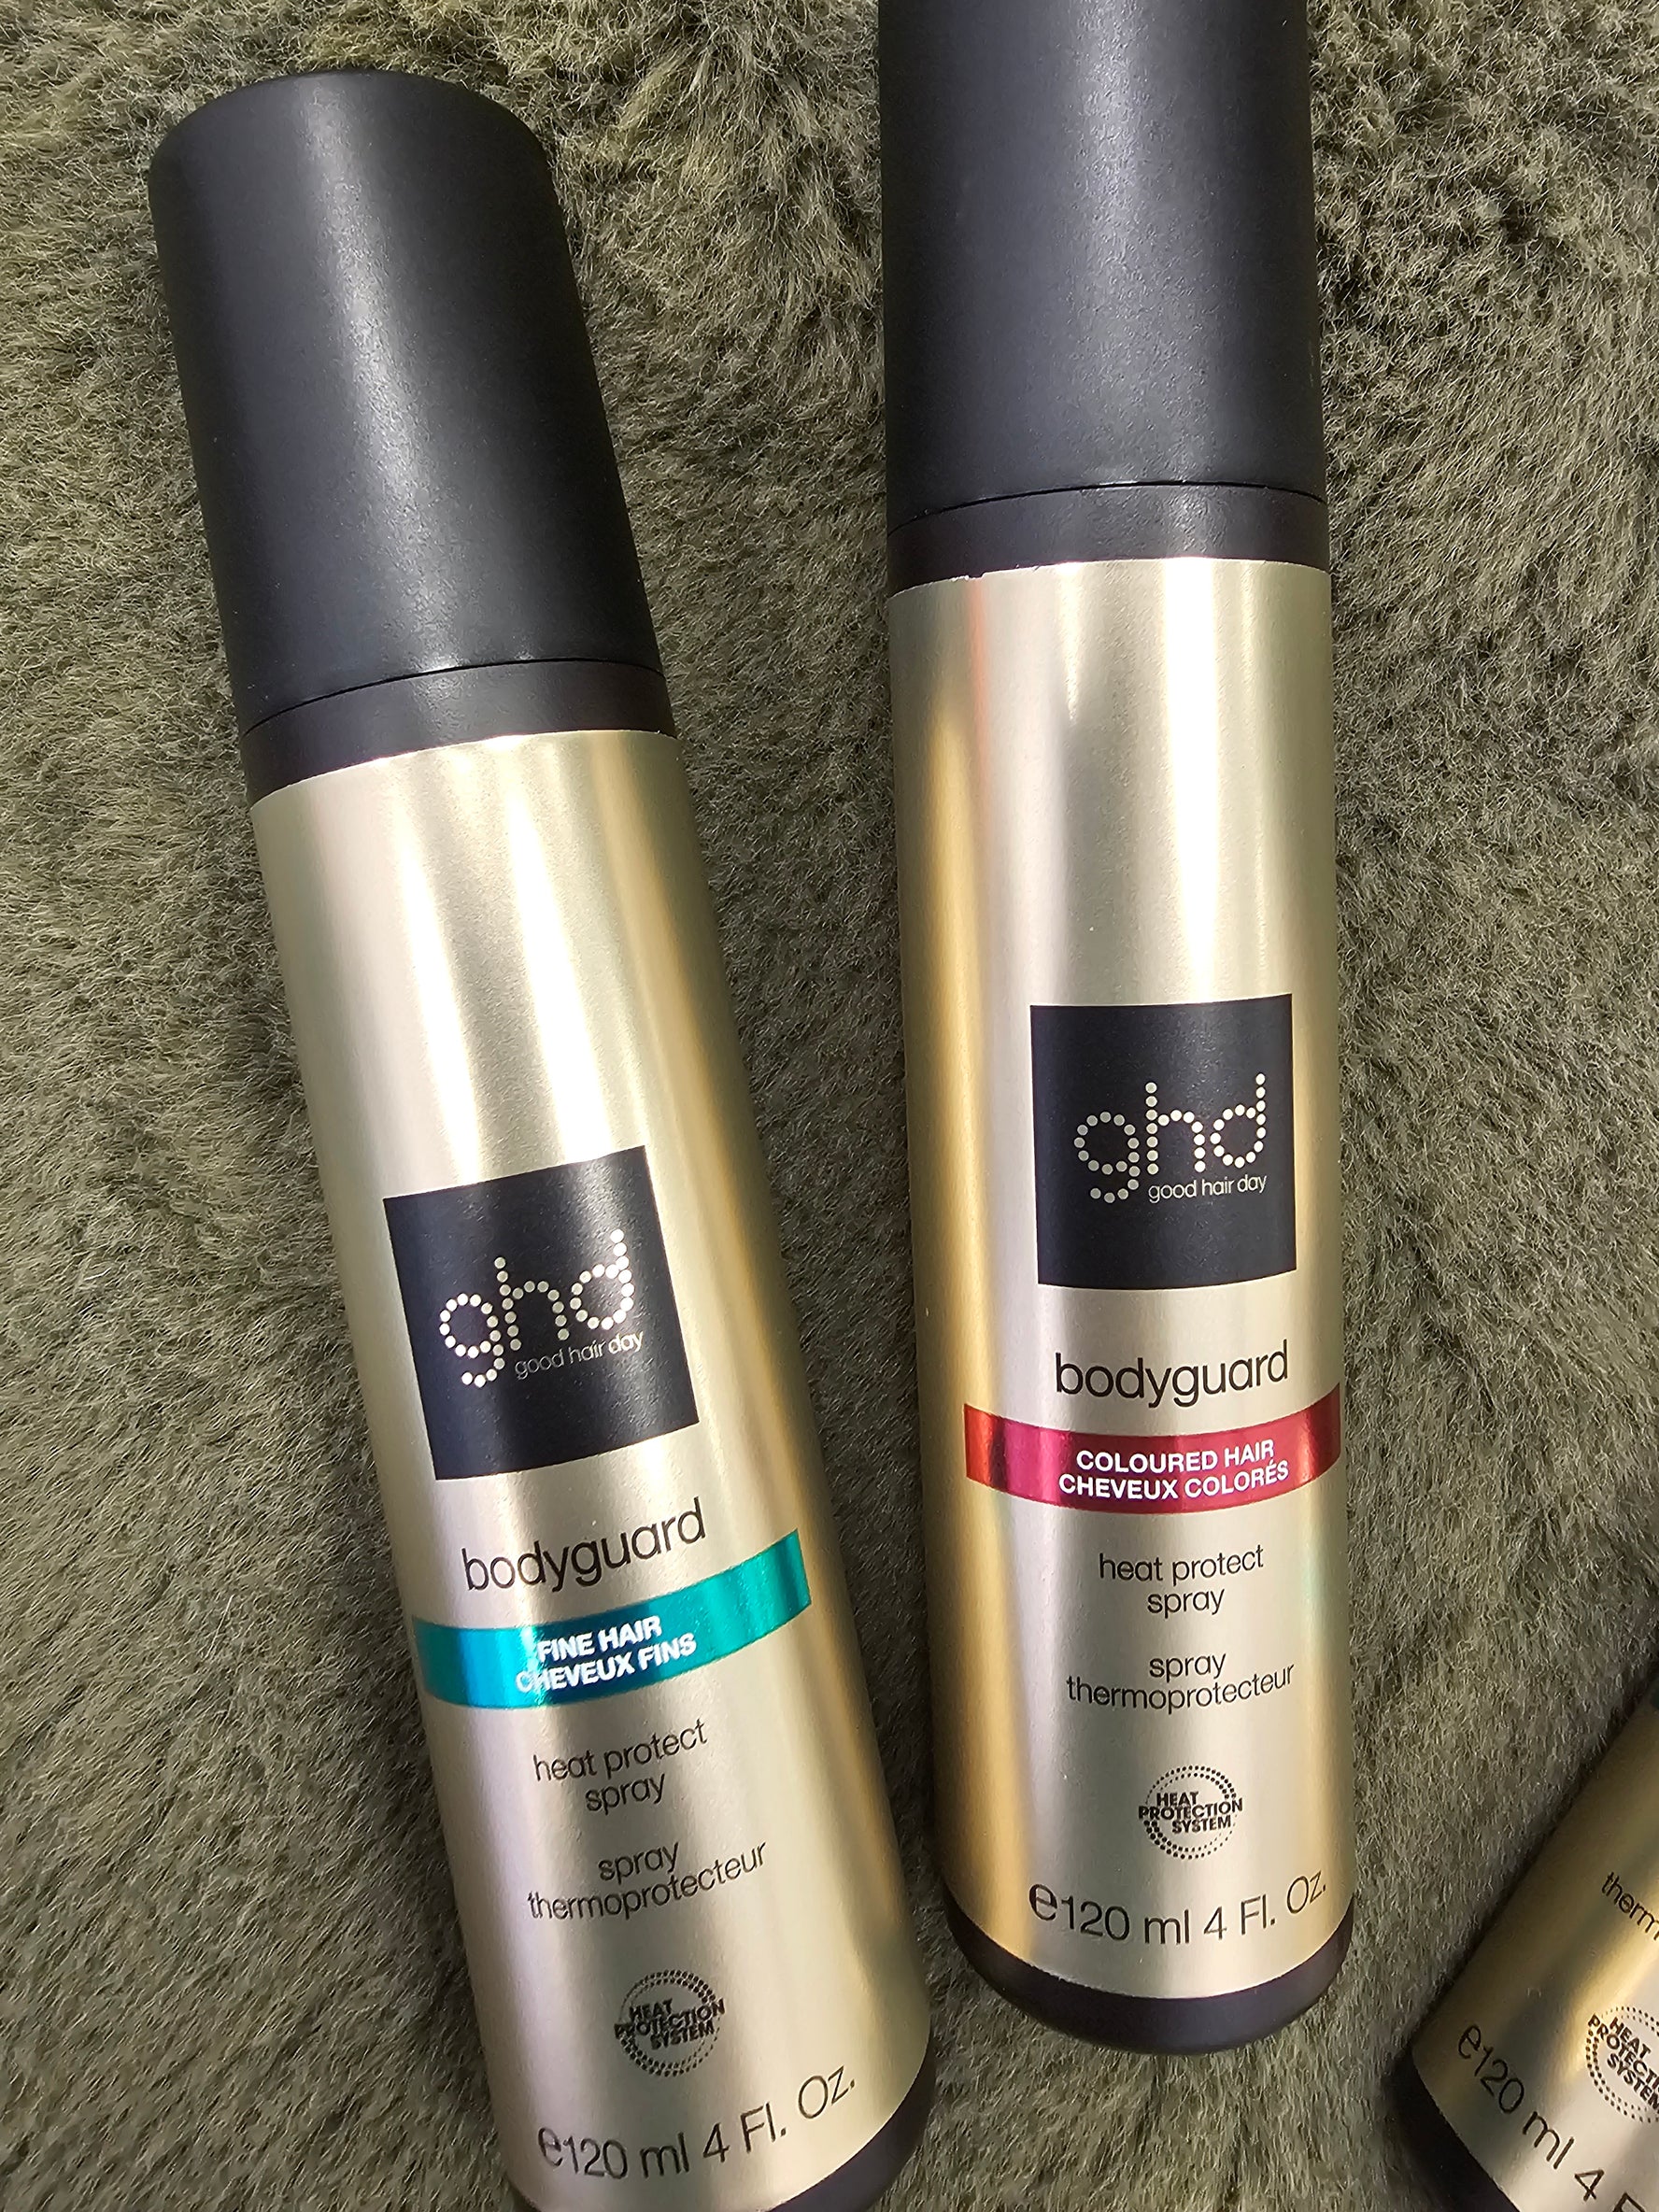 GHD Bodyguard Heat protection spray for Coloured hair